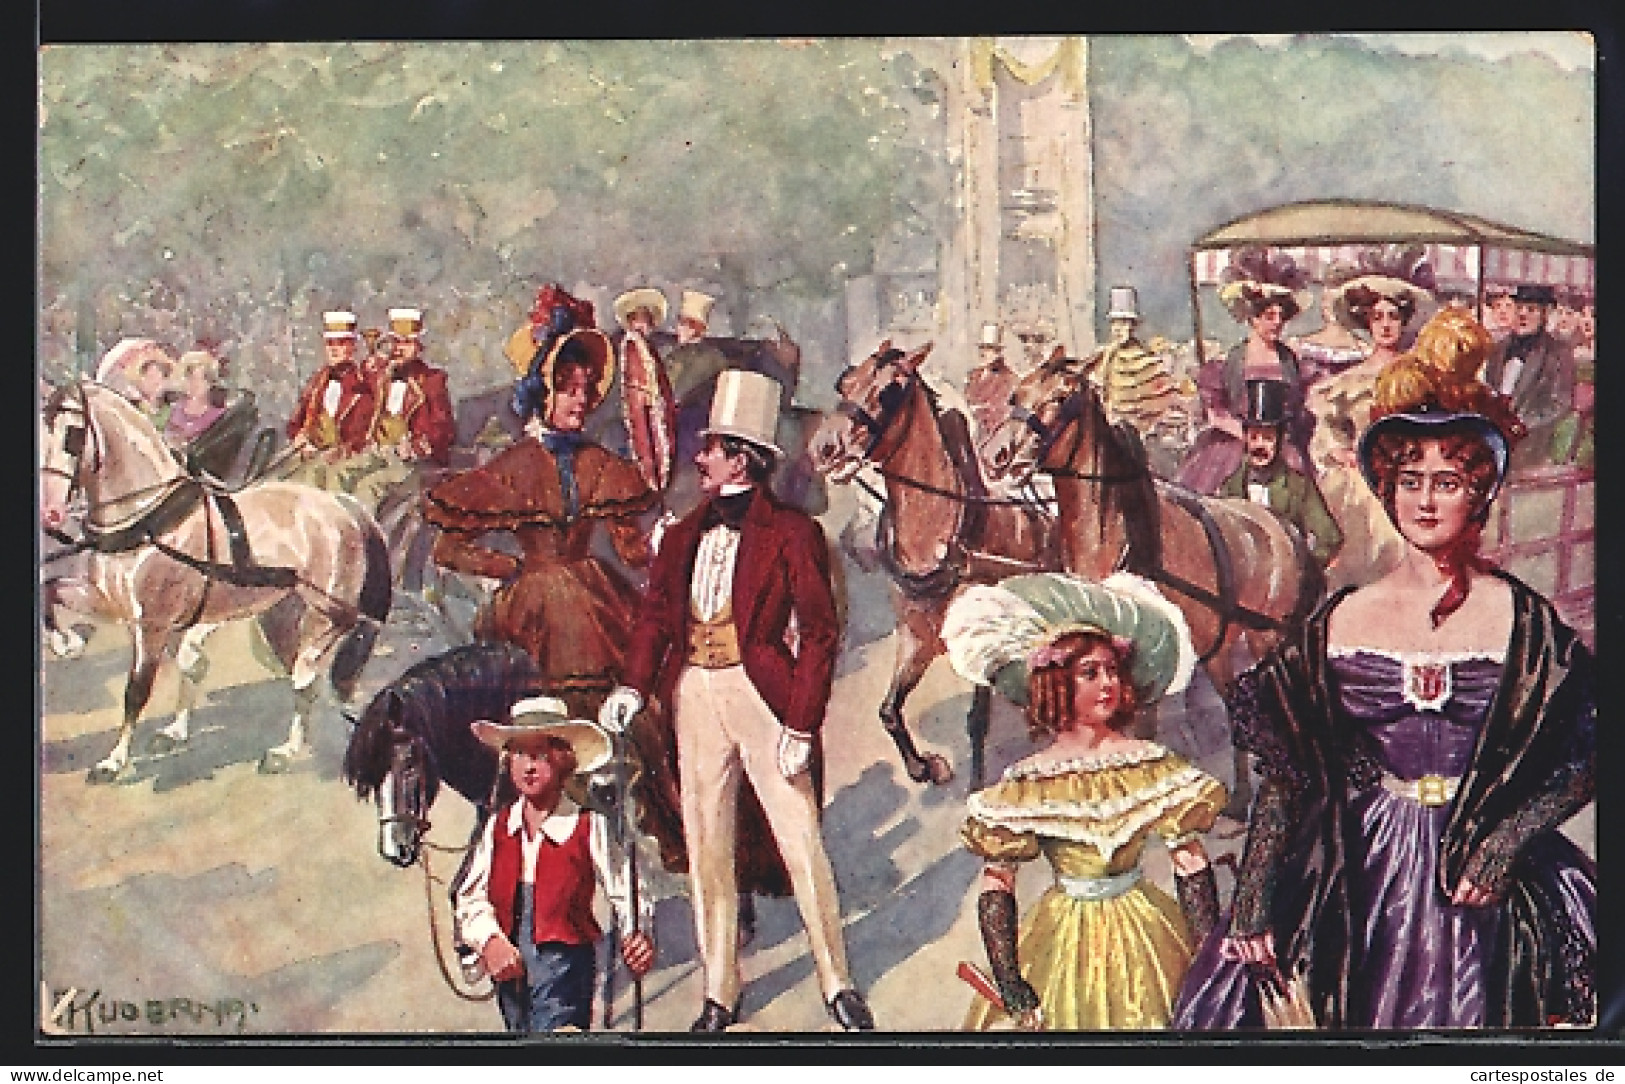 Künstler-AK Kaiser-Jubiläums-Huldigungsfestzug, Wien 1908, Gr. XVIII: Strassenleben Mit Fuhrwerk (1830-1840)  - Familles Royales